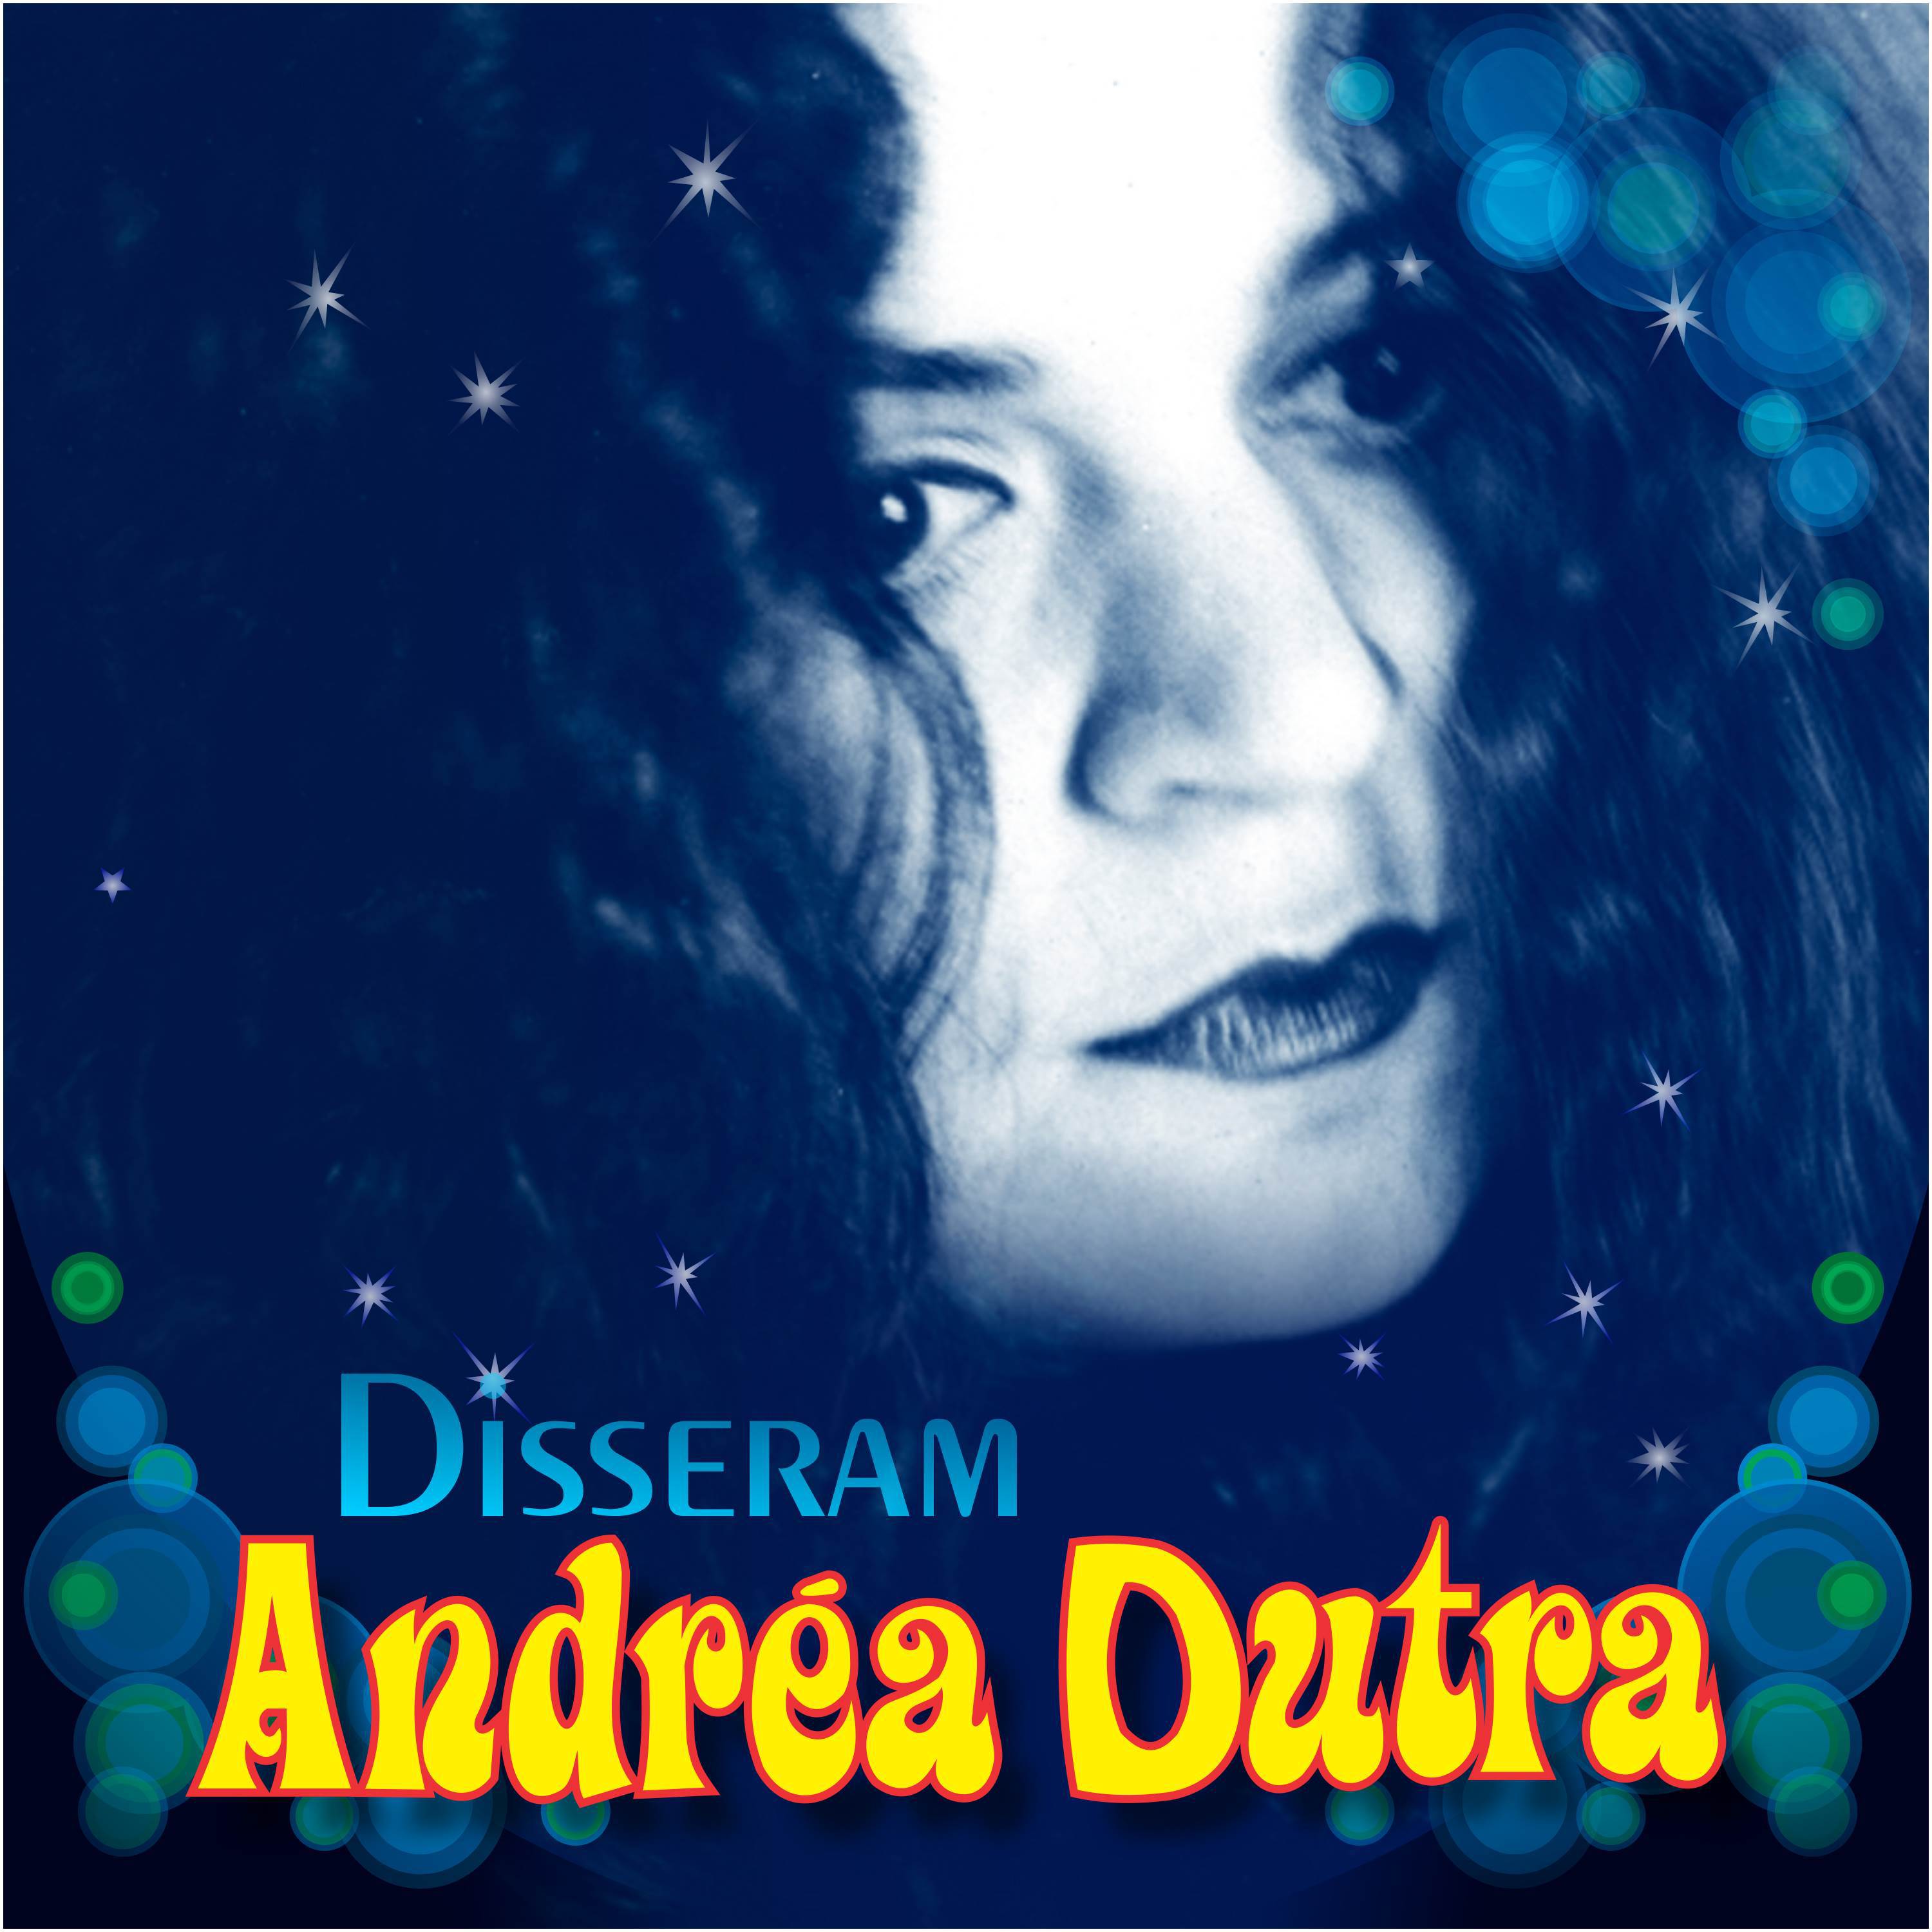 Andrea Dutra - Disseram